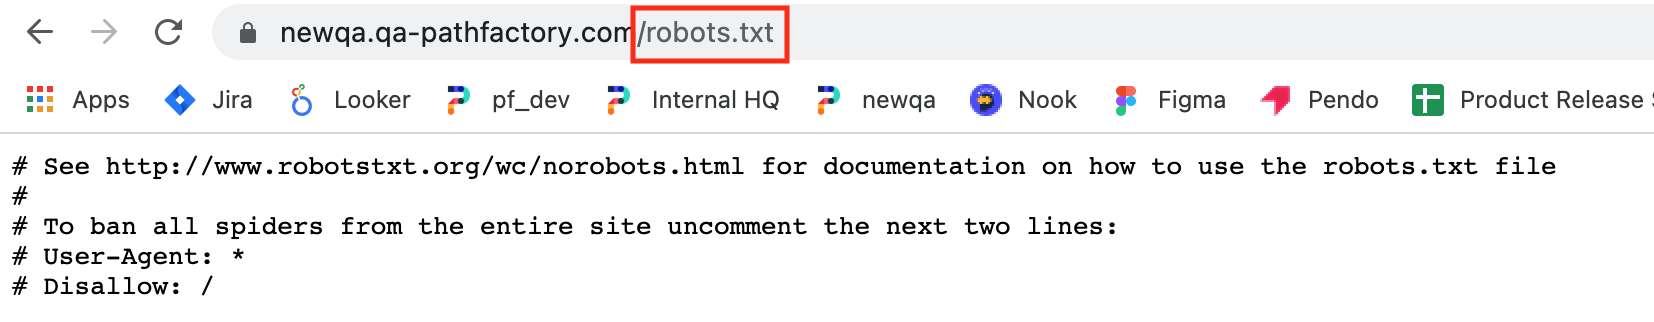 Robots text file